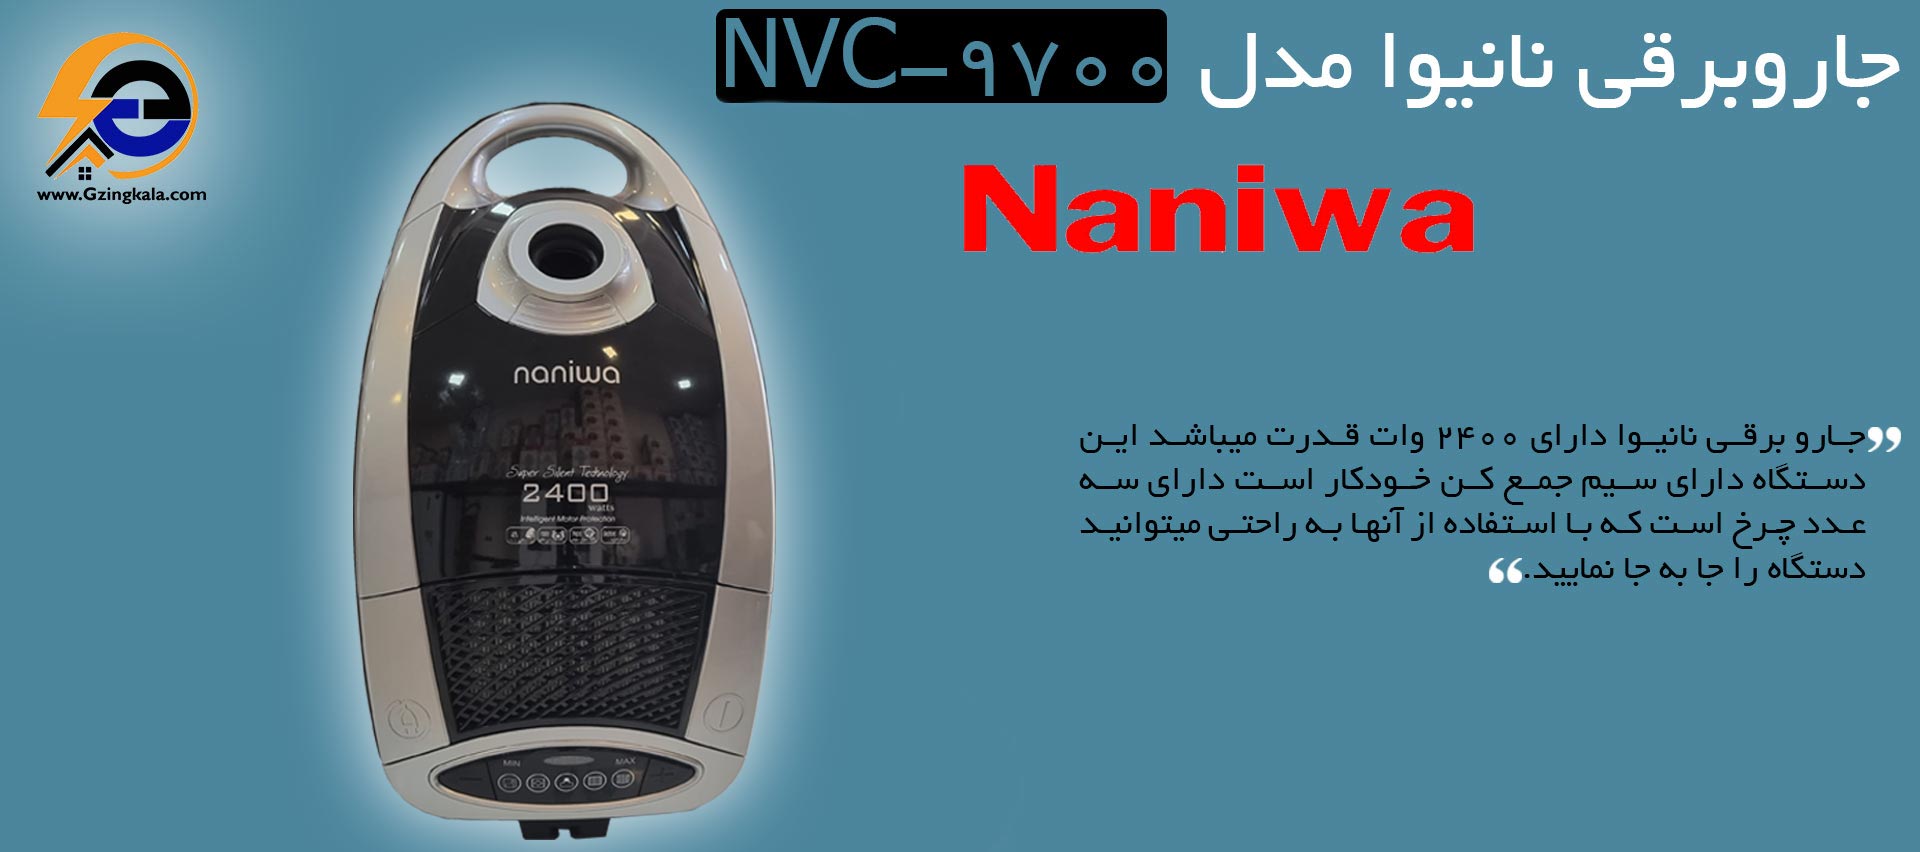 جاروبرقی نانیوا مدل NVC-9700